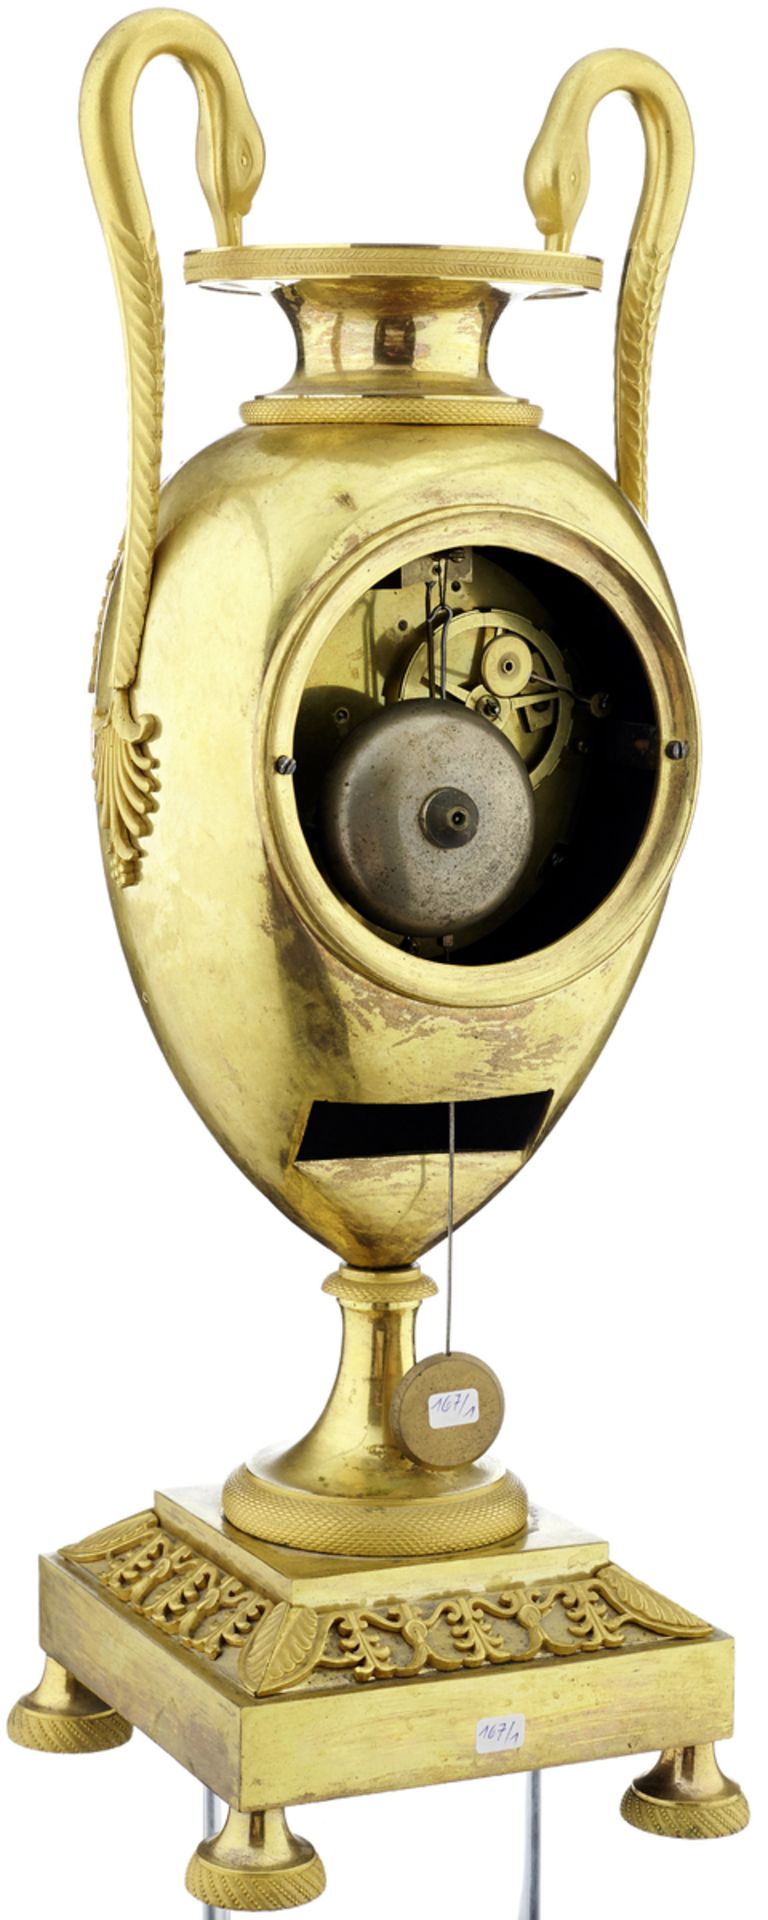 KaminuhrFrankreich, um 1800. Vasenförmiges Gehäuse aus matt- und glanzvergoldeter Bronze mit - Bild 2 aus 4